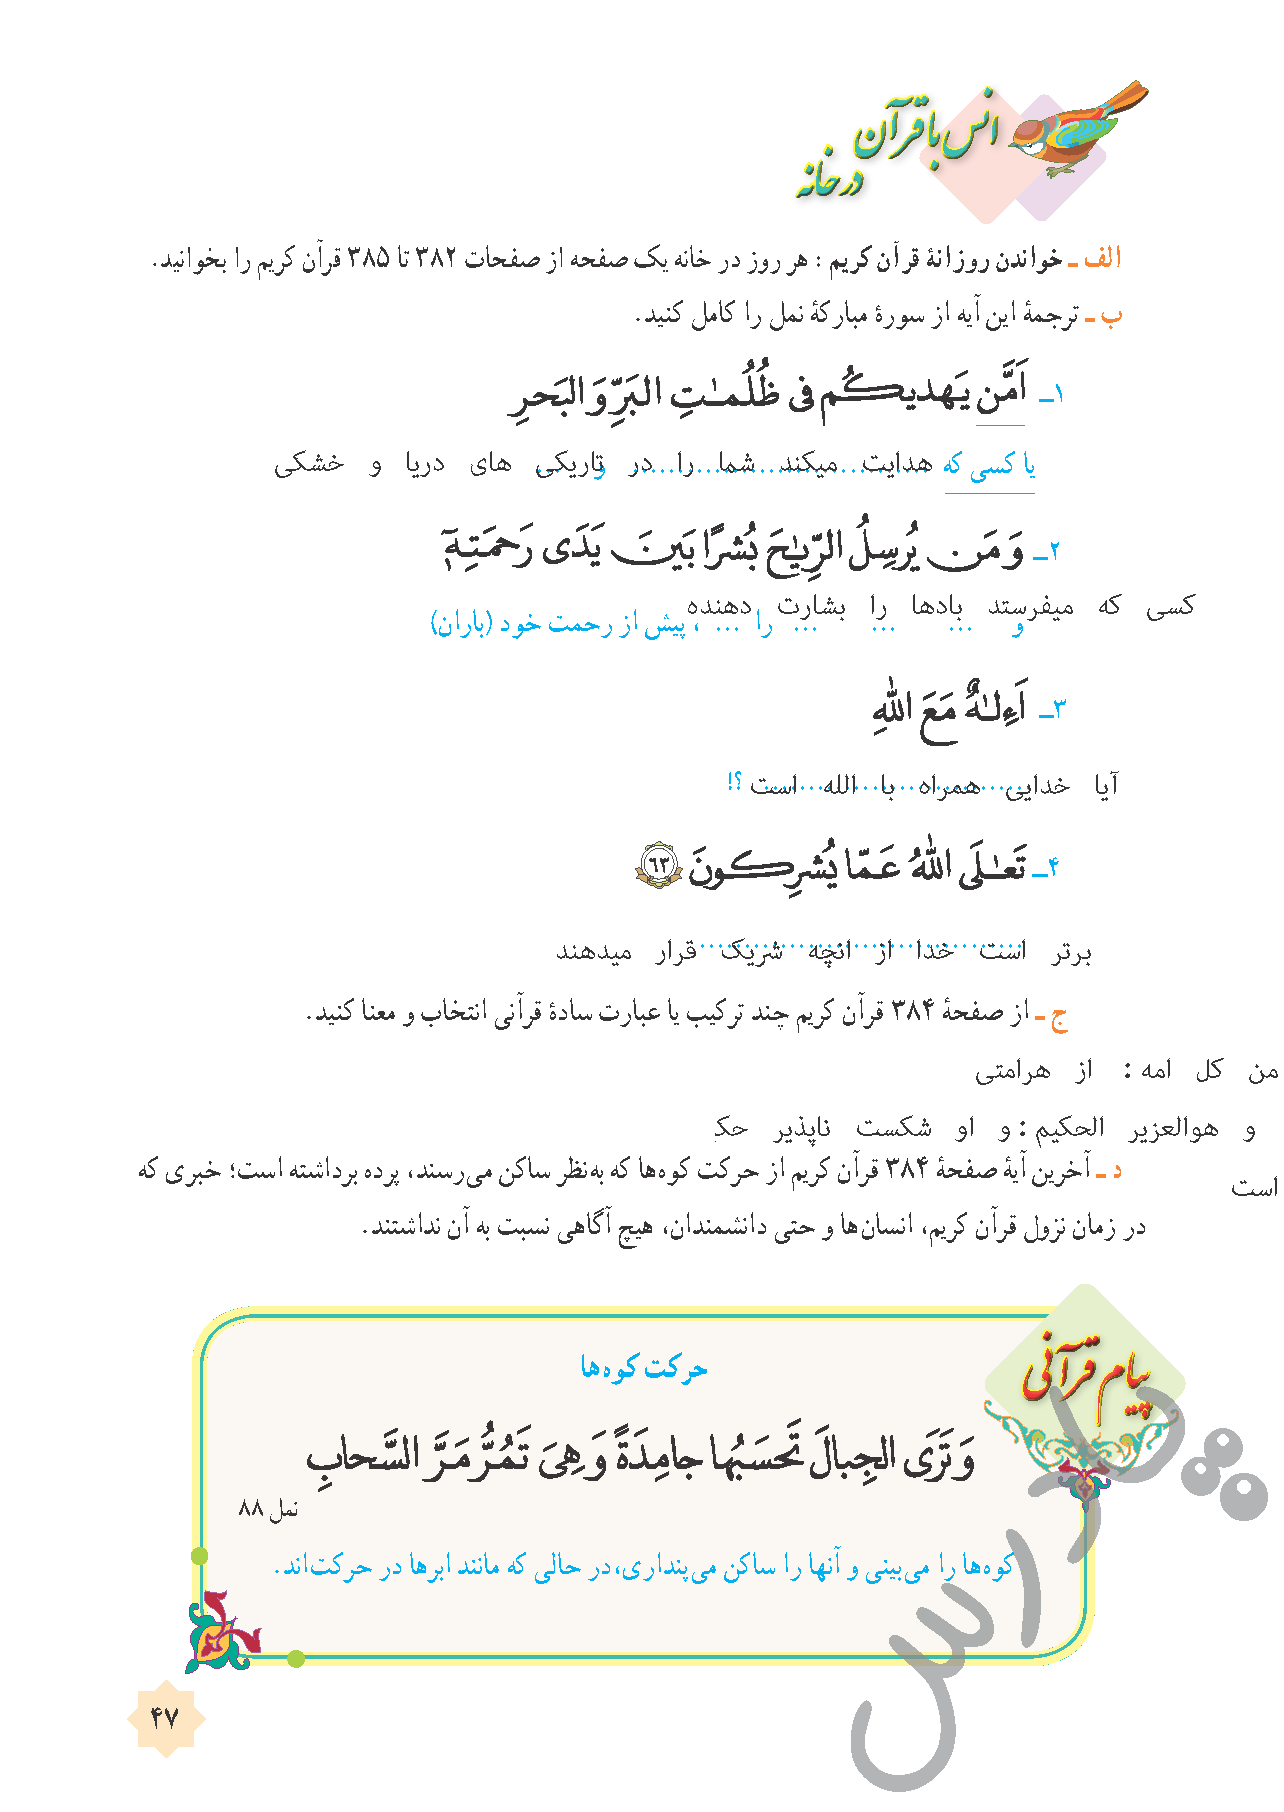 پاسخ درس 4 قرآن هشتم  صفحه 4